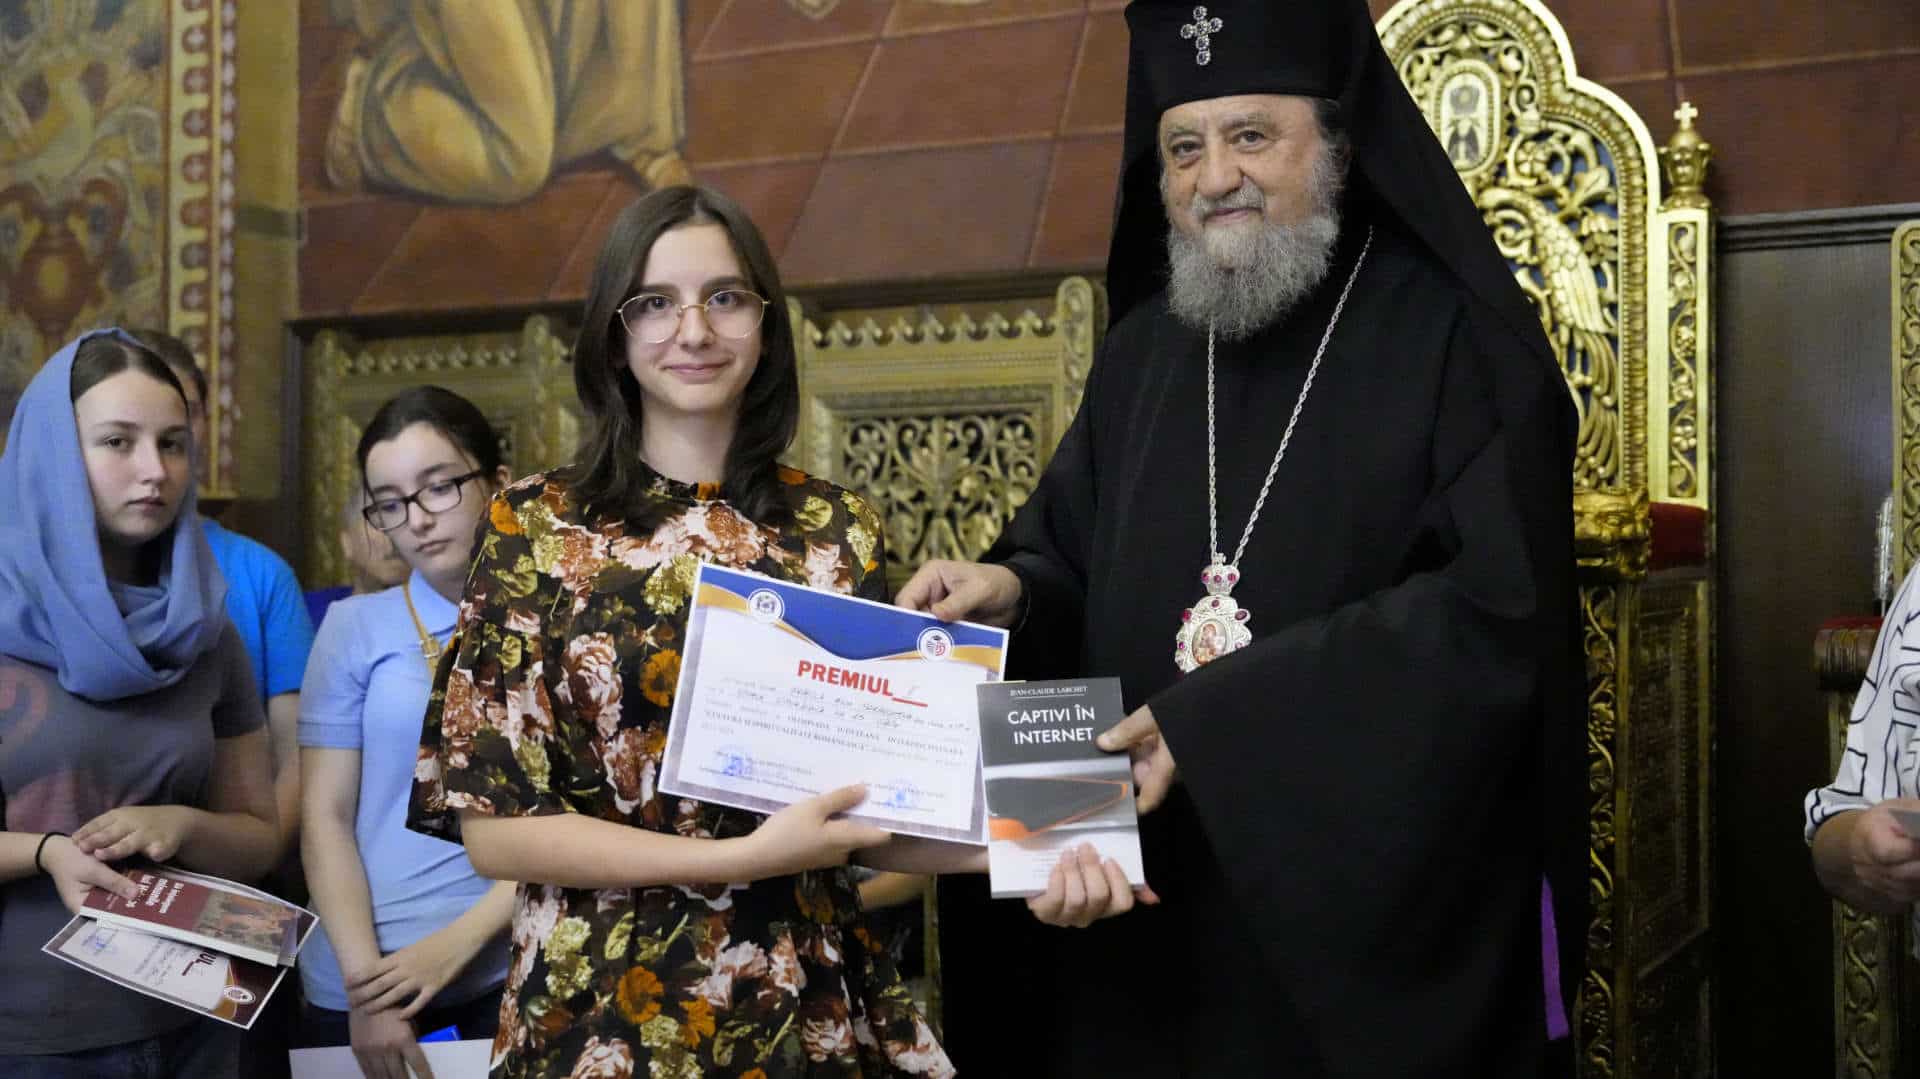 zeci de elevi sibieni premiați de mitropolia ardealului cu cărți și diplome pentru rezultate foarte bune la olimpiada de religie (foto)